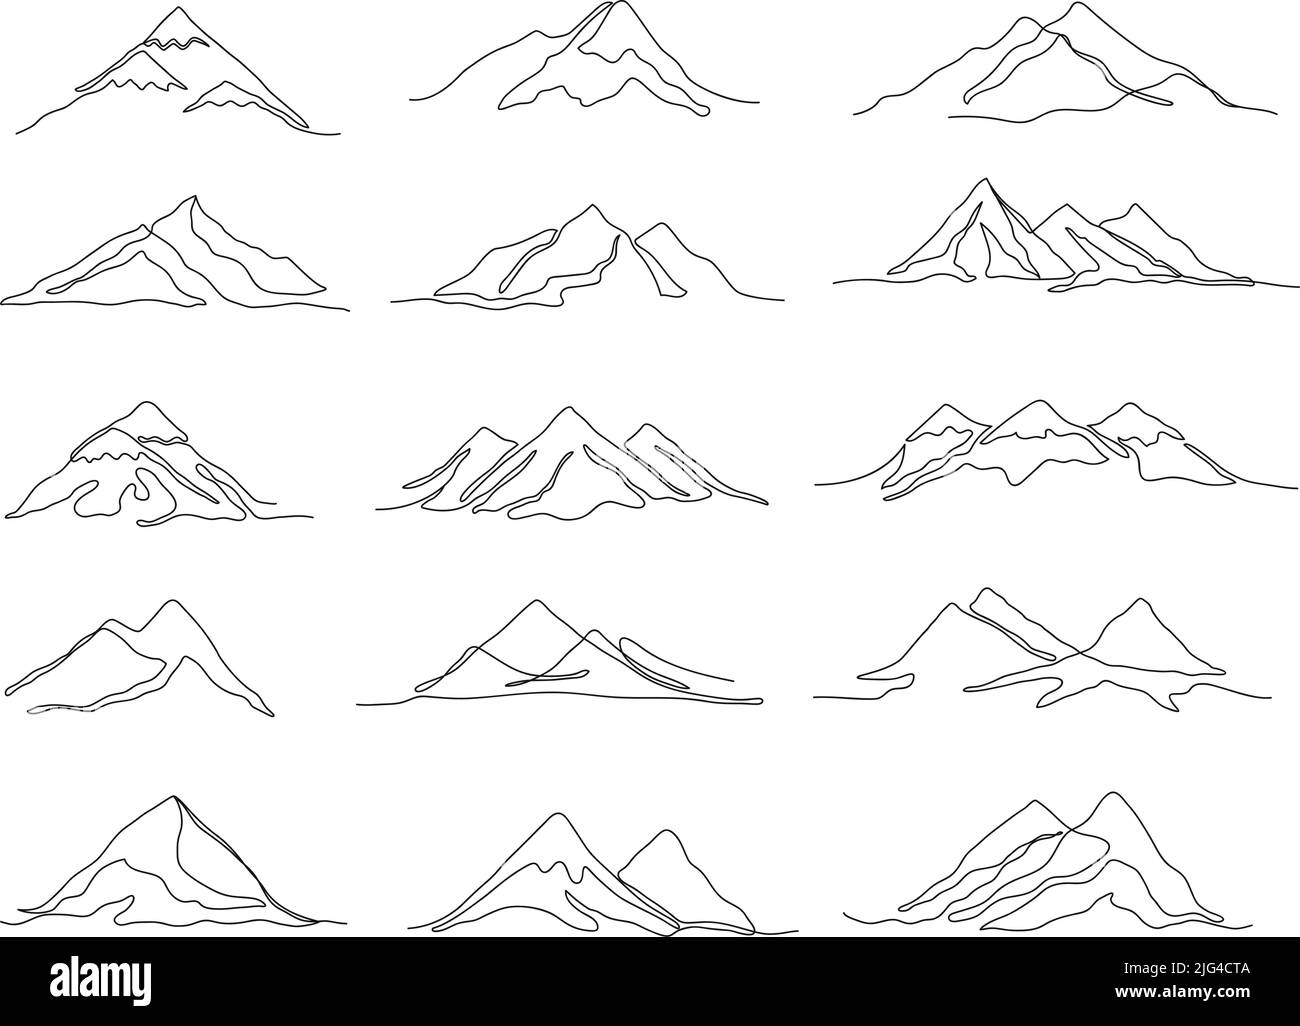 Montagne a una linea. Gamme lineari di montagna e picchi a contorno continuo, insieme di illustrazione vettoriale di viaggio paesaggio Illustrazione Vettoriale